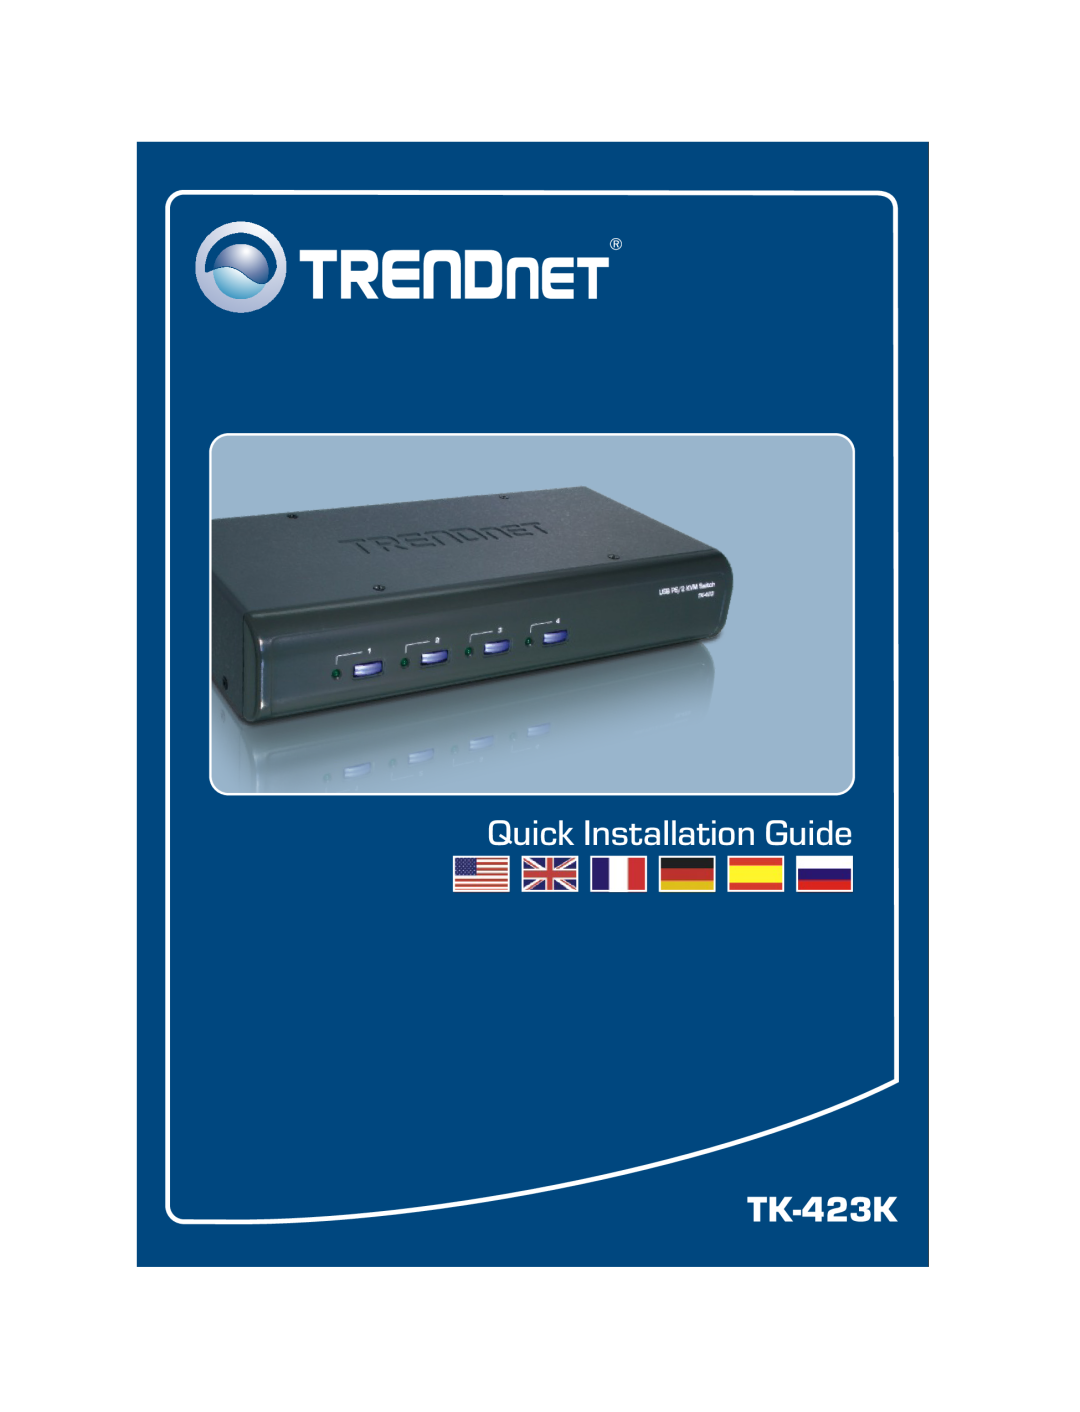 TRENDnet TK-423K manual Quick Installation Guide 